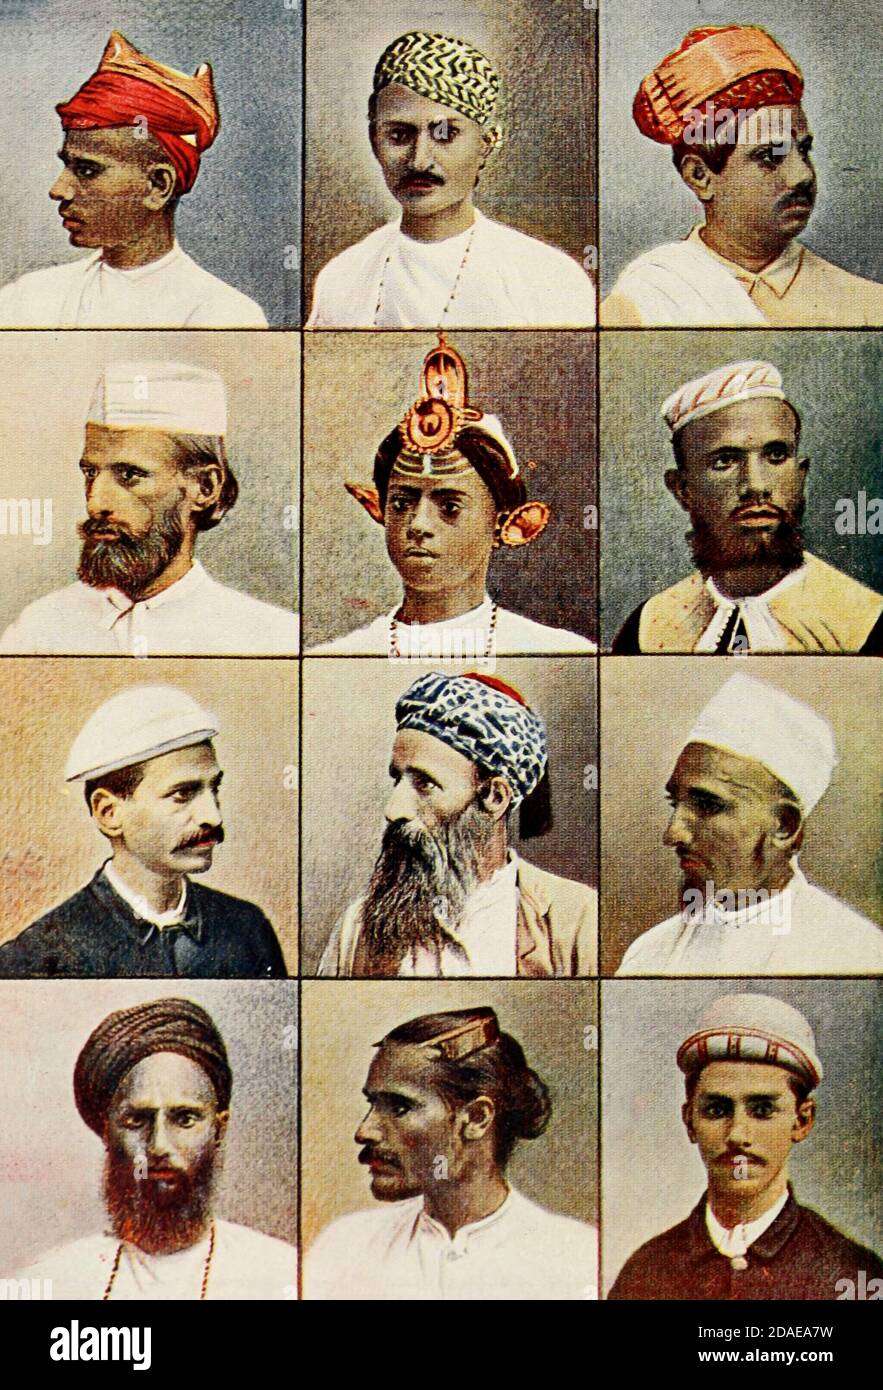 12 Porträts von Indianern Frontispiz aus Typical Pictures of Indian Natives wird Reproduktion von speziell vorbereiteten handkolorierten Fotografien. Von F. M. Coleman (Times of India) Siebte Ausgabe Bombay 1902 Stockfoto